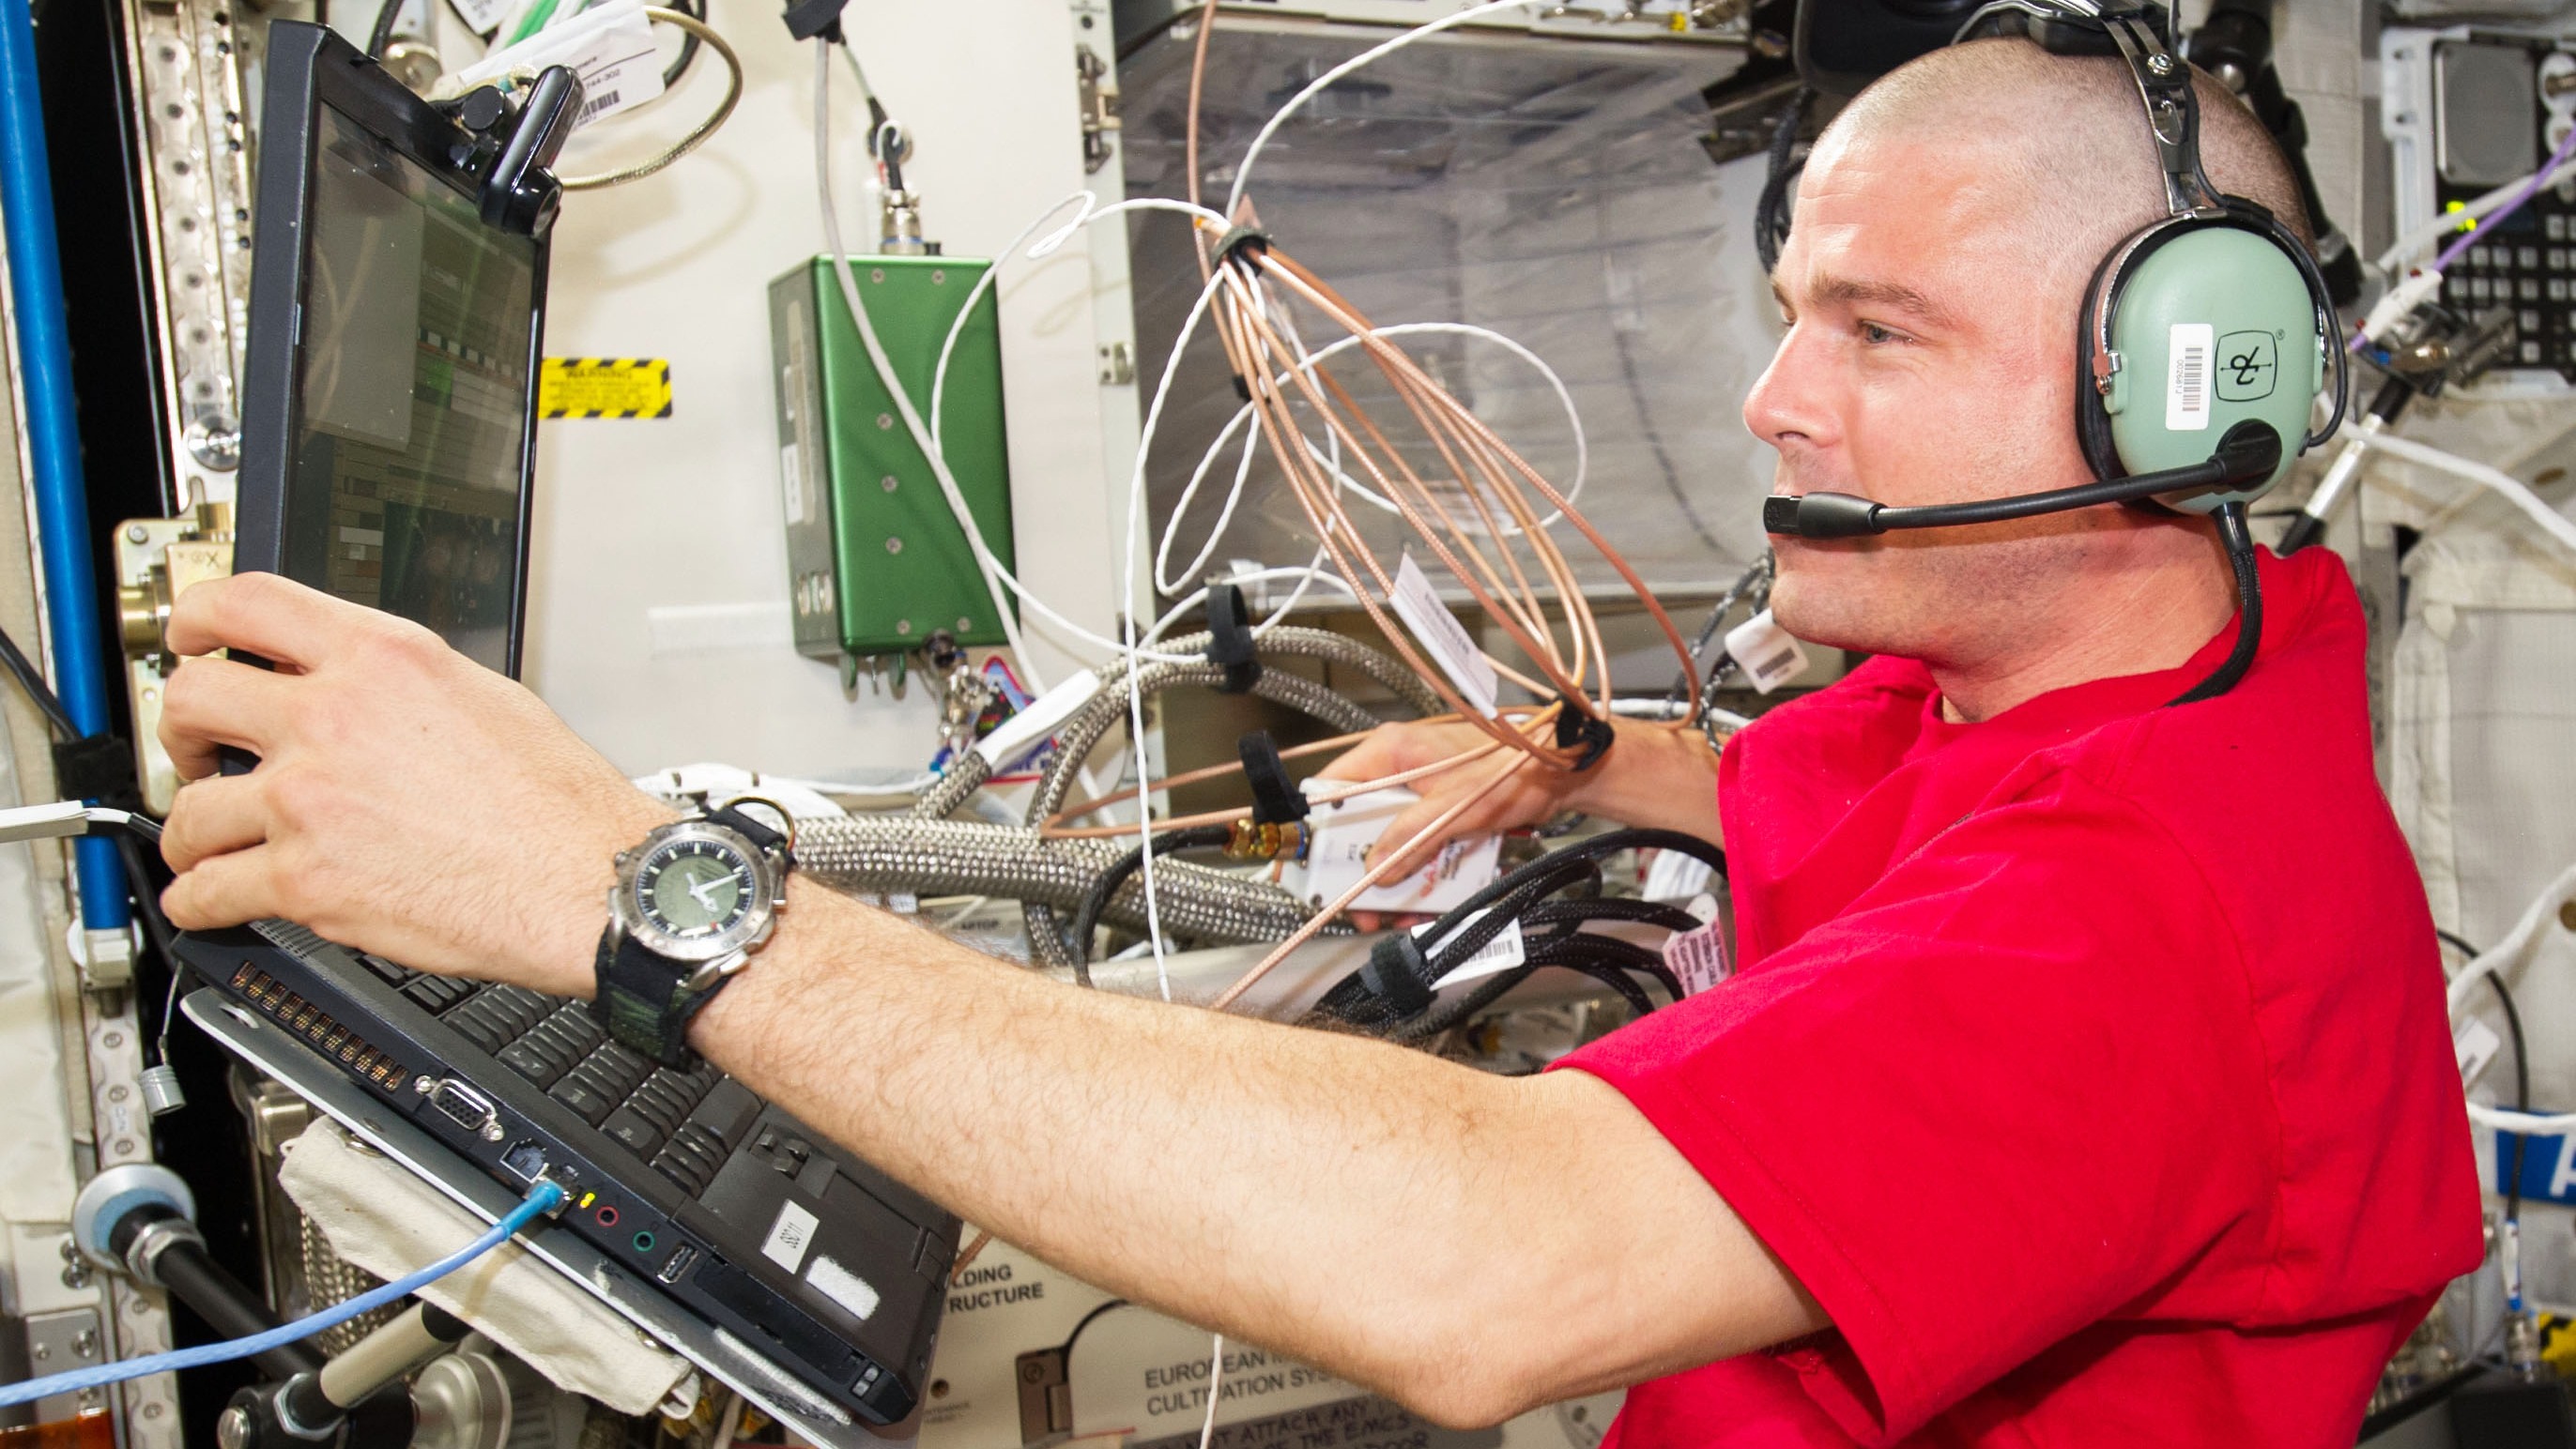 Reed Wiseman dans un casque sur la Station spatiale internationale.  Il tient un ordinateur portable sur un support avec sa main gauche